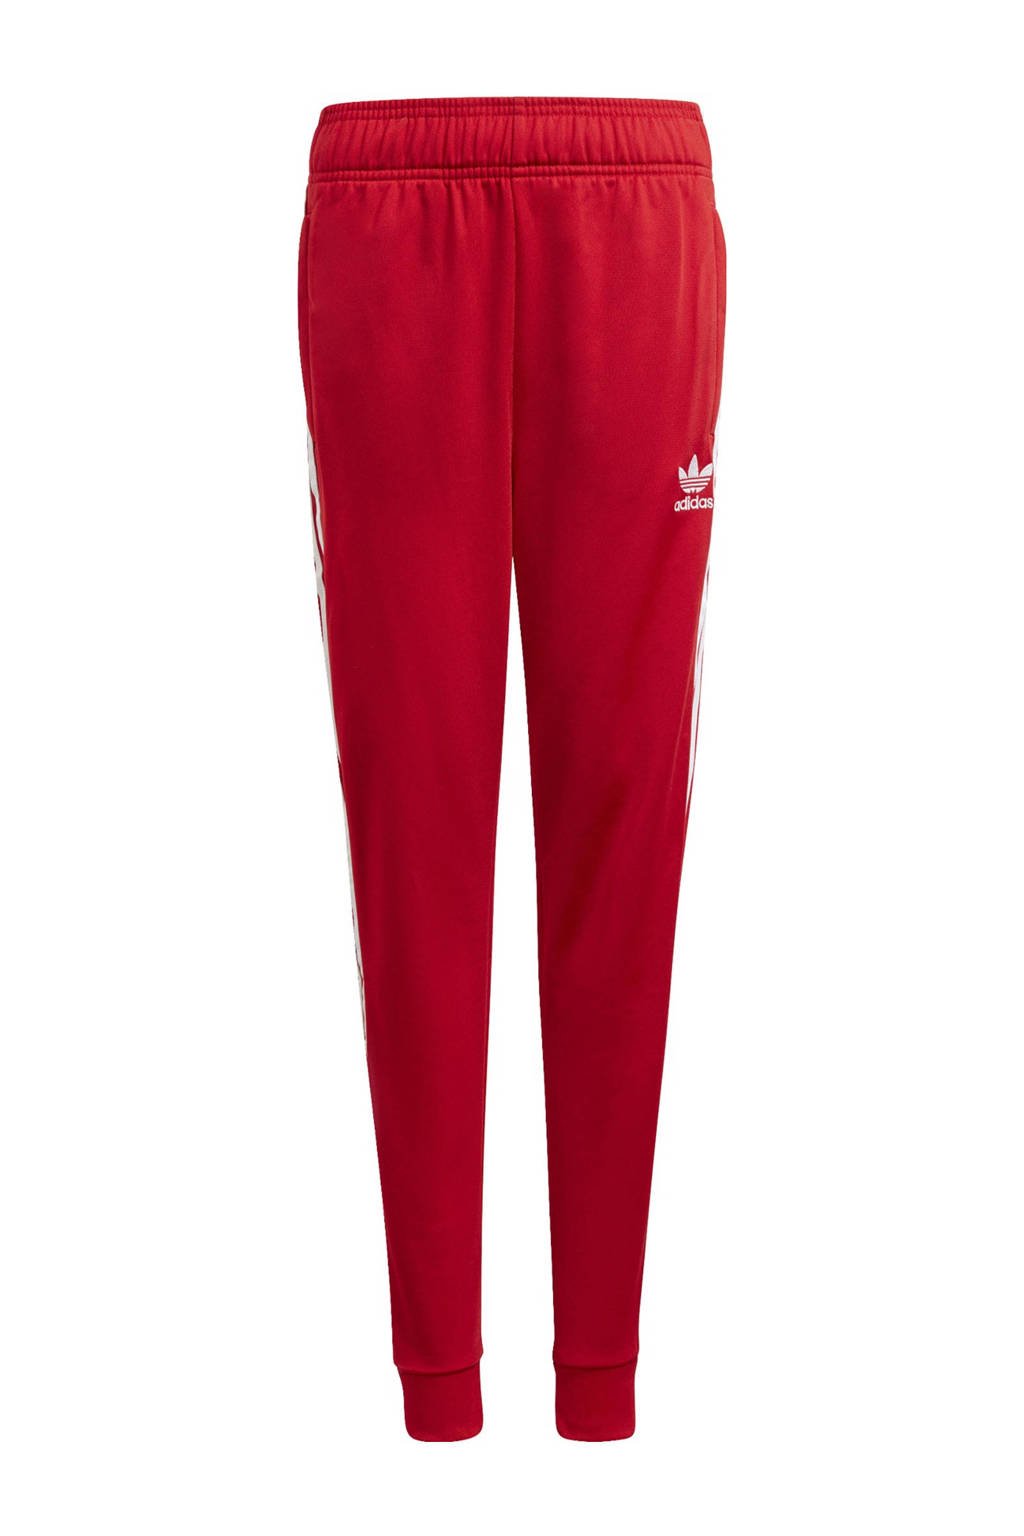 adidas Originals joggingbroek met logo rood/wit, Rood/wit